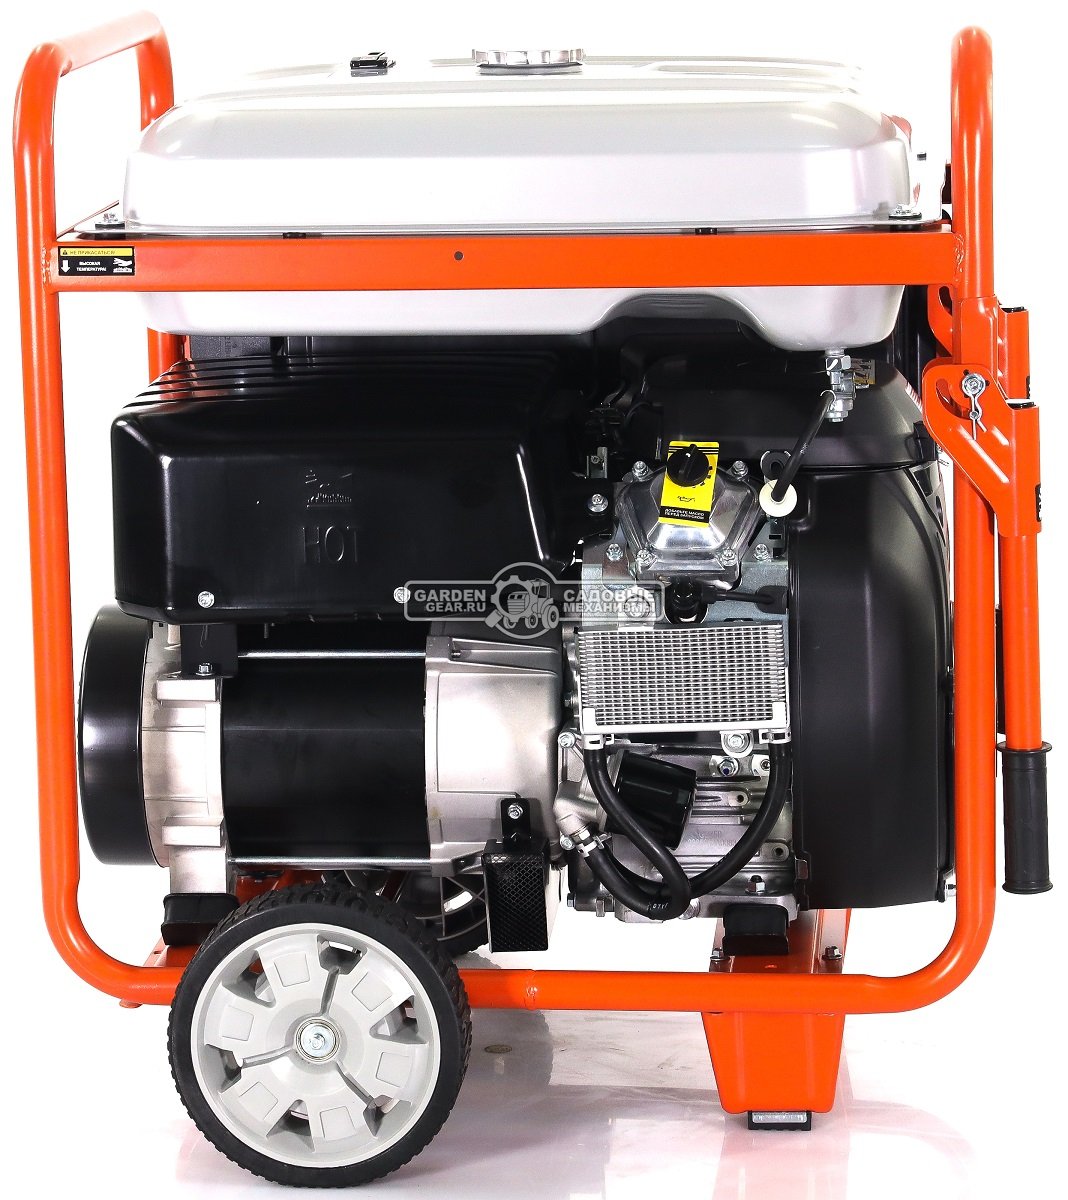 Бензиновый генератор Zongshen PB 15003 E трехфазный (PRC, 750 см3, 12.0/13.0 кВт, 55 л, электростарт, колеса, 157 кг)